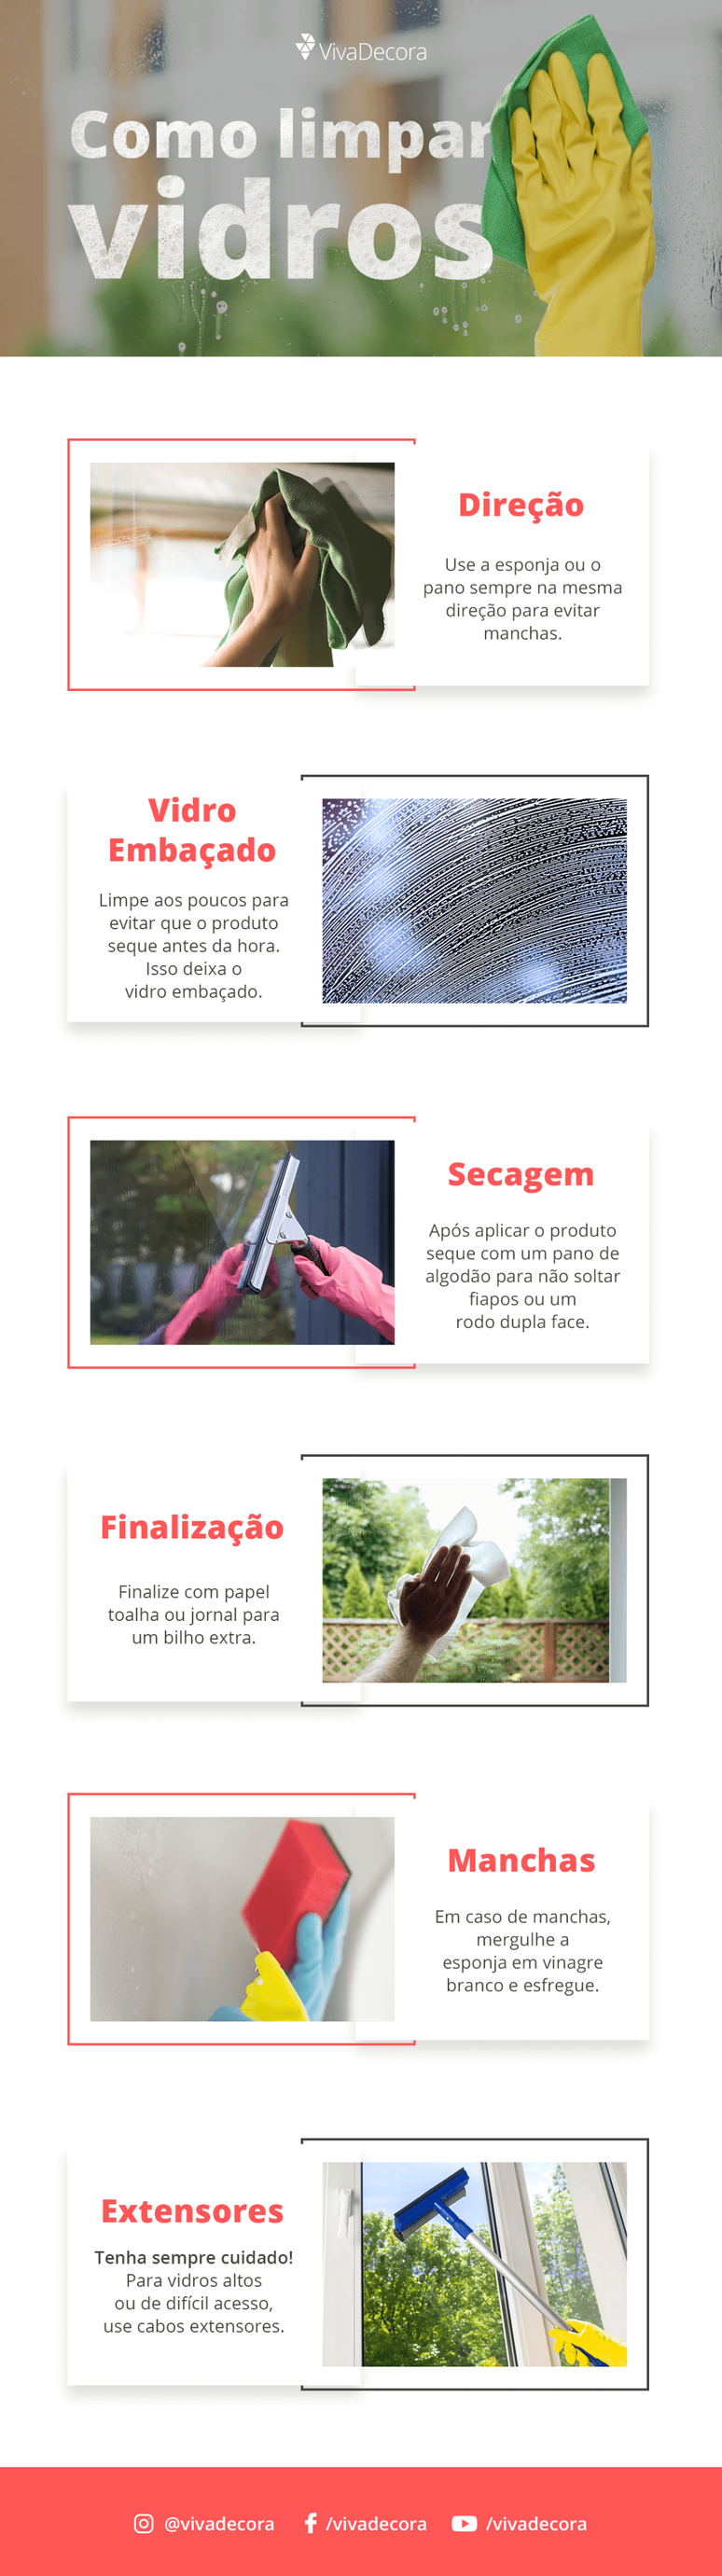 Infográfico – Como limpar vidros